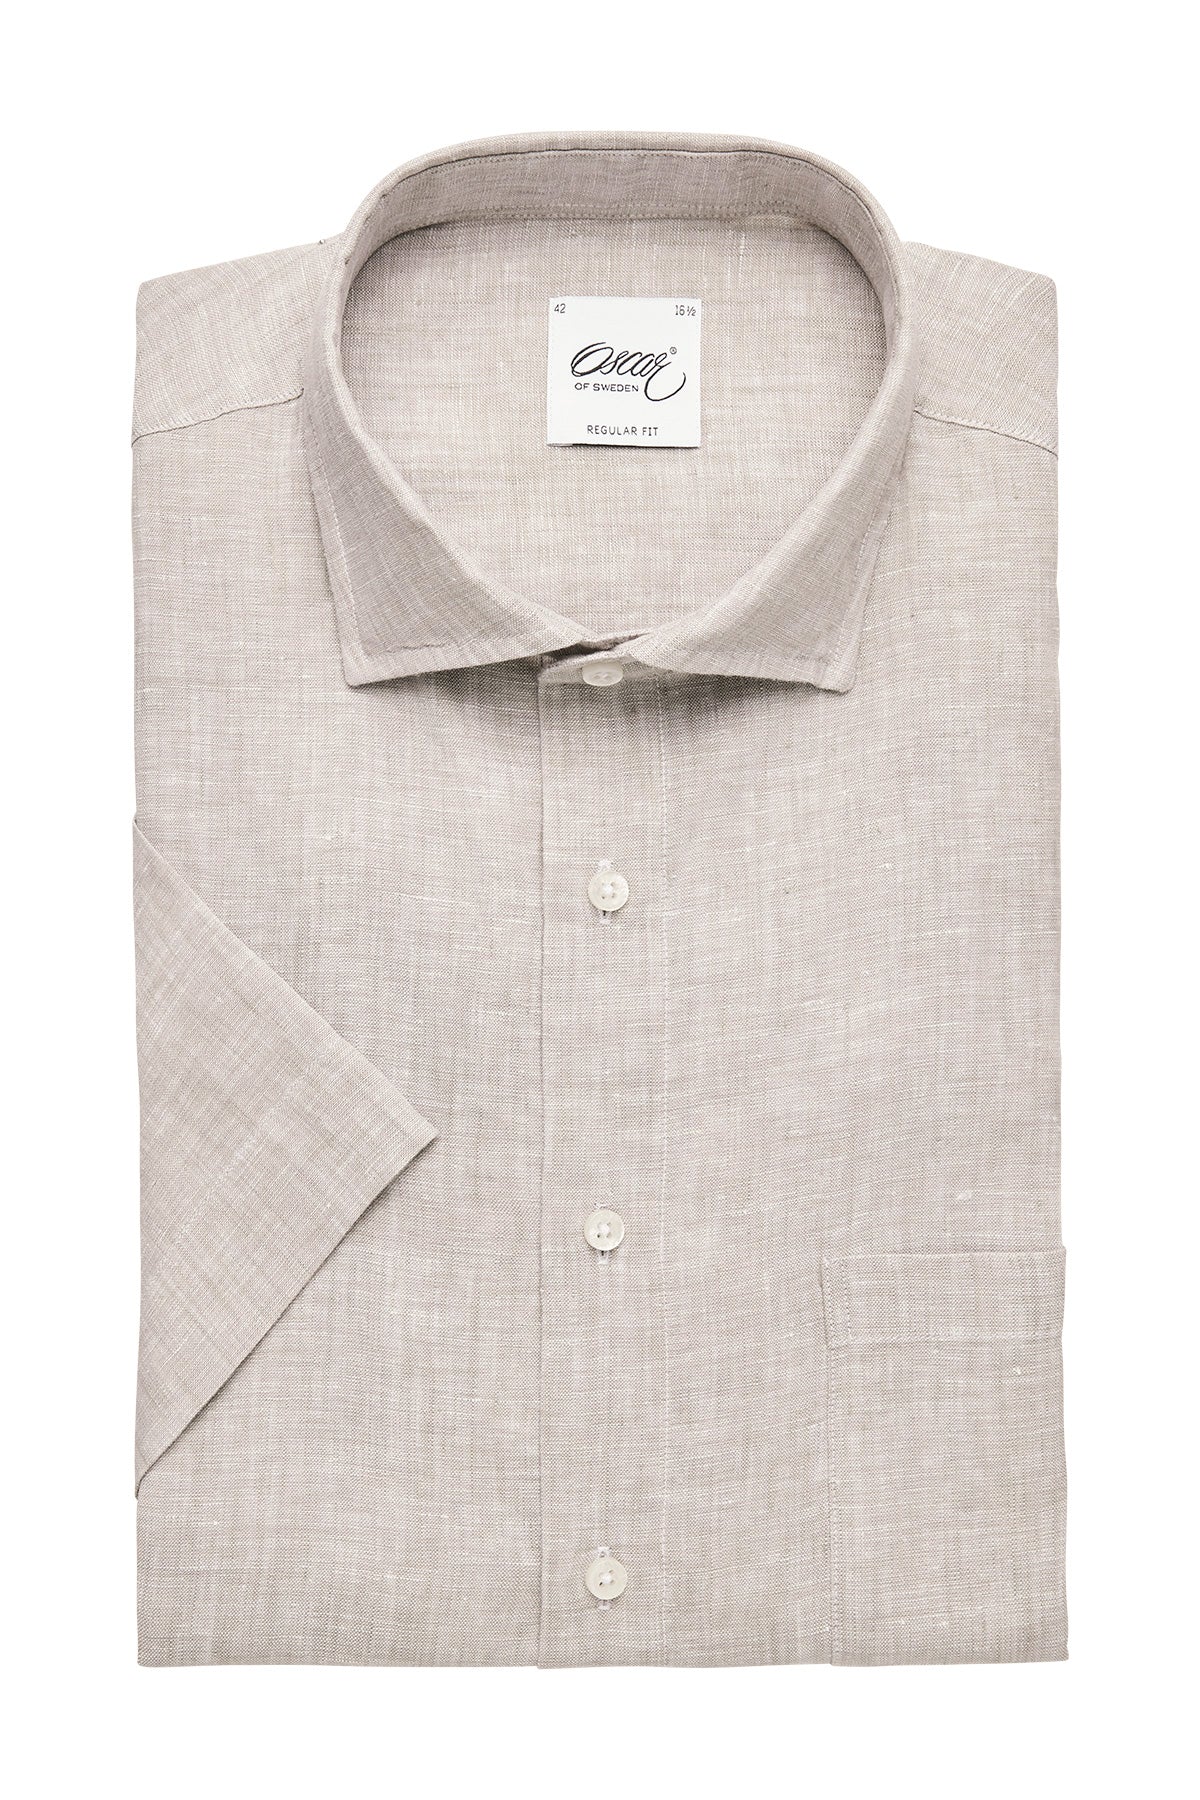 Beige short sleeve regular fit linen shirt